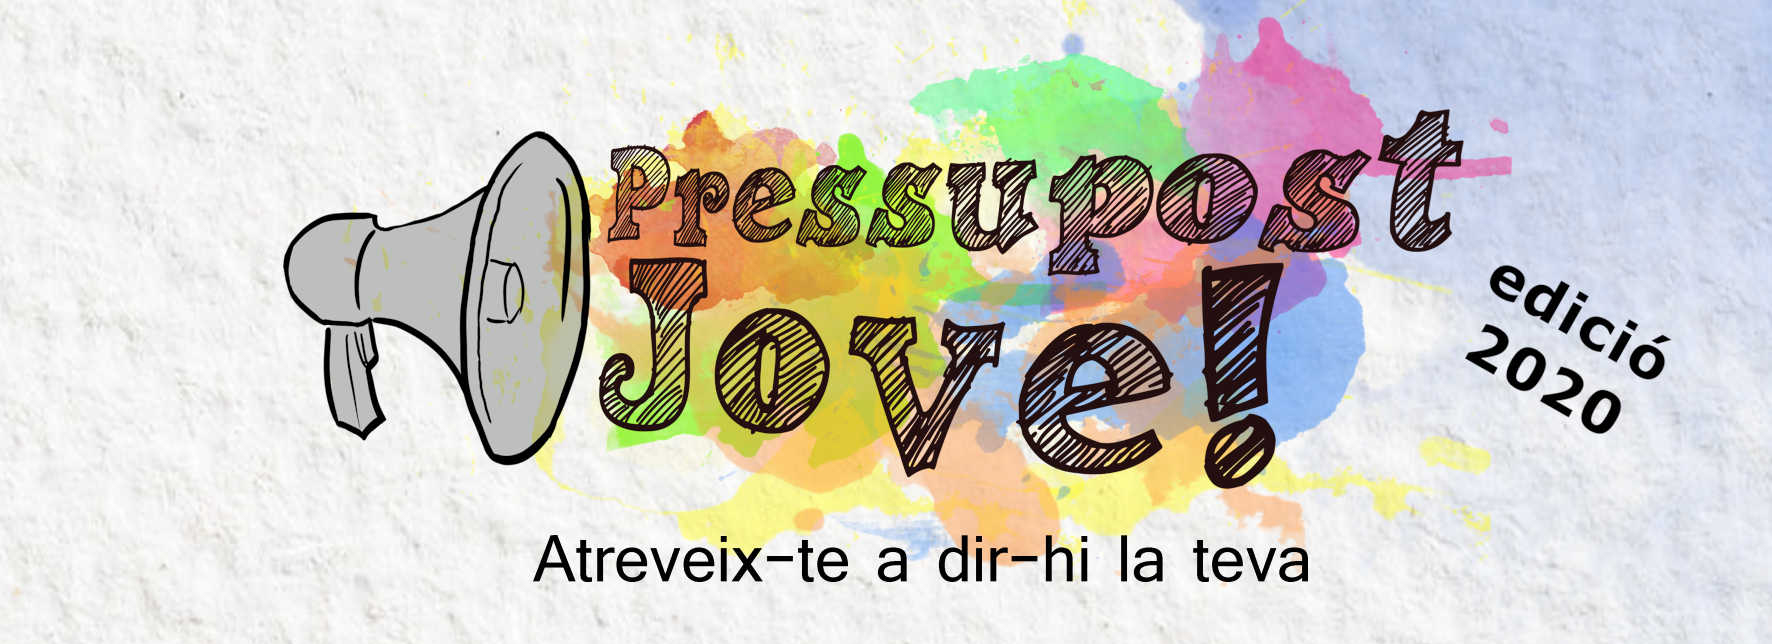 Pressupost Jove 2020 Logo